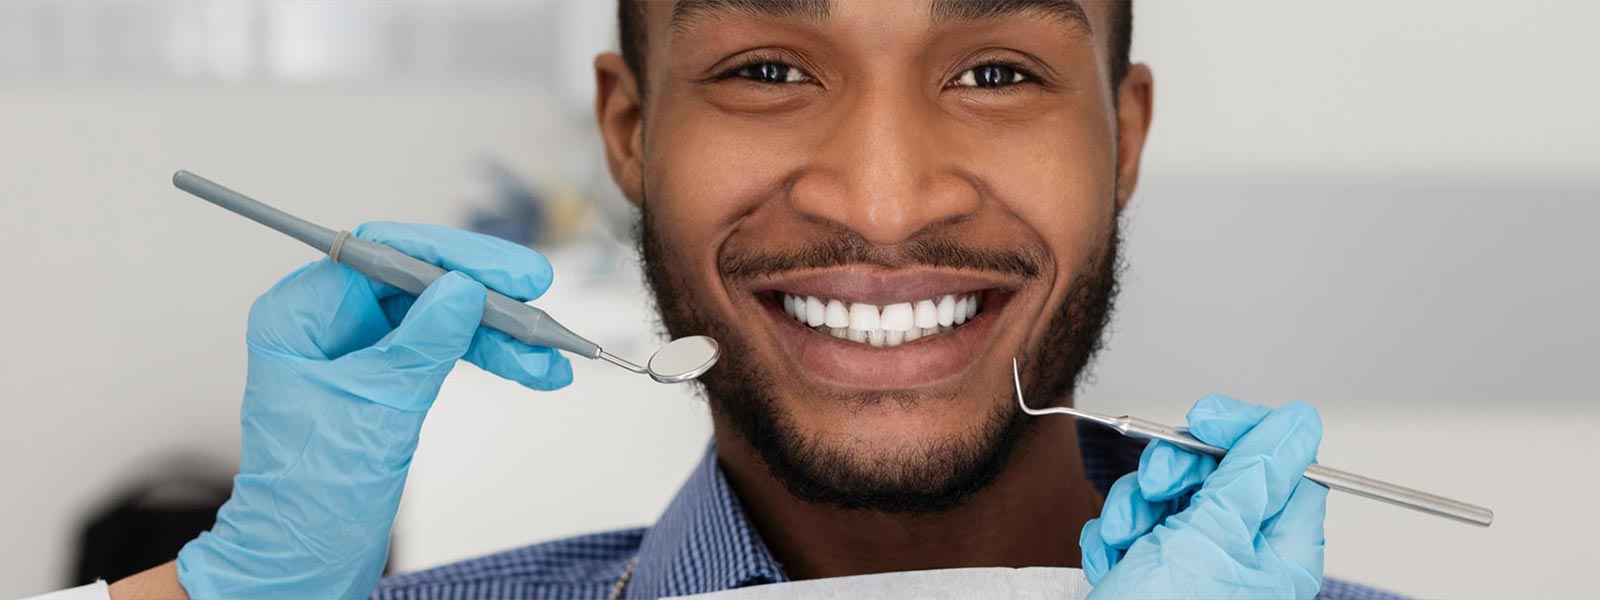 Afro American man smiling during dental examination